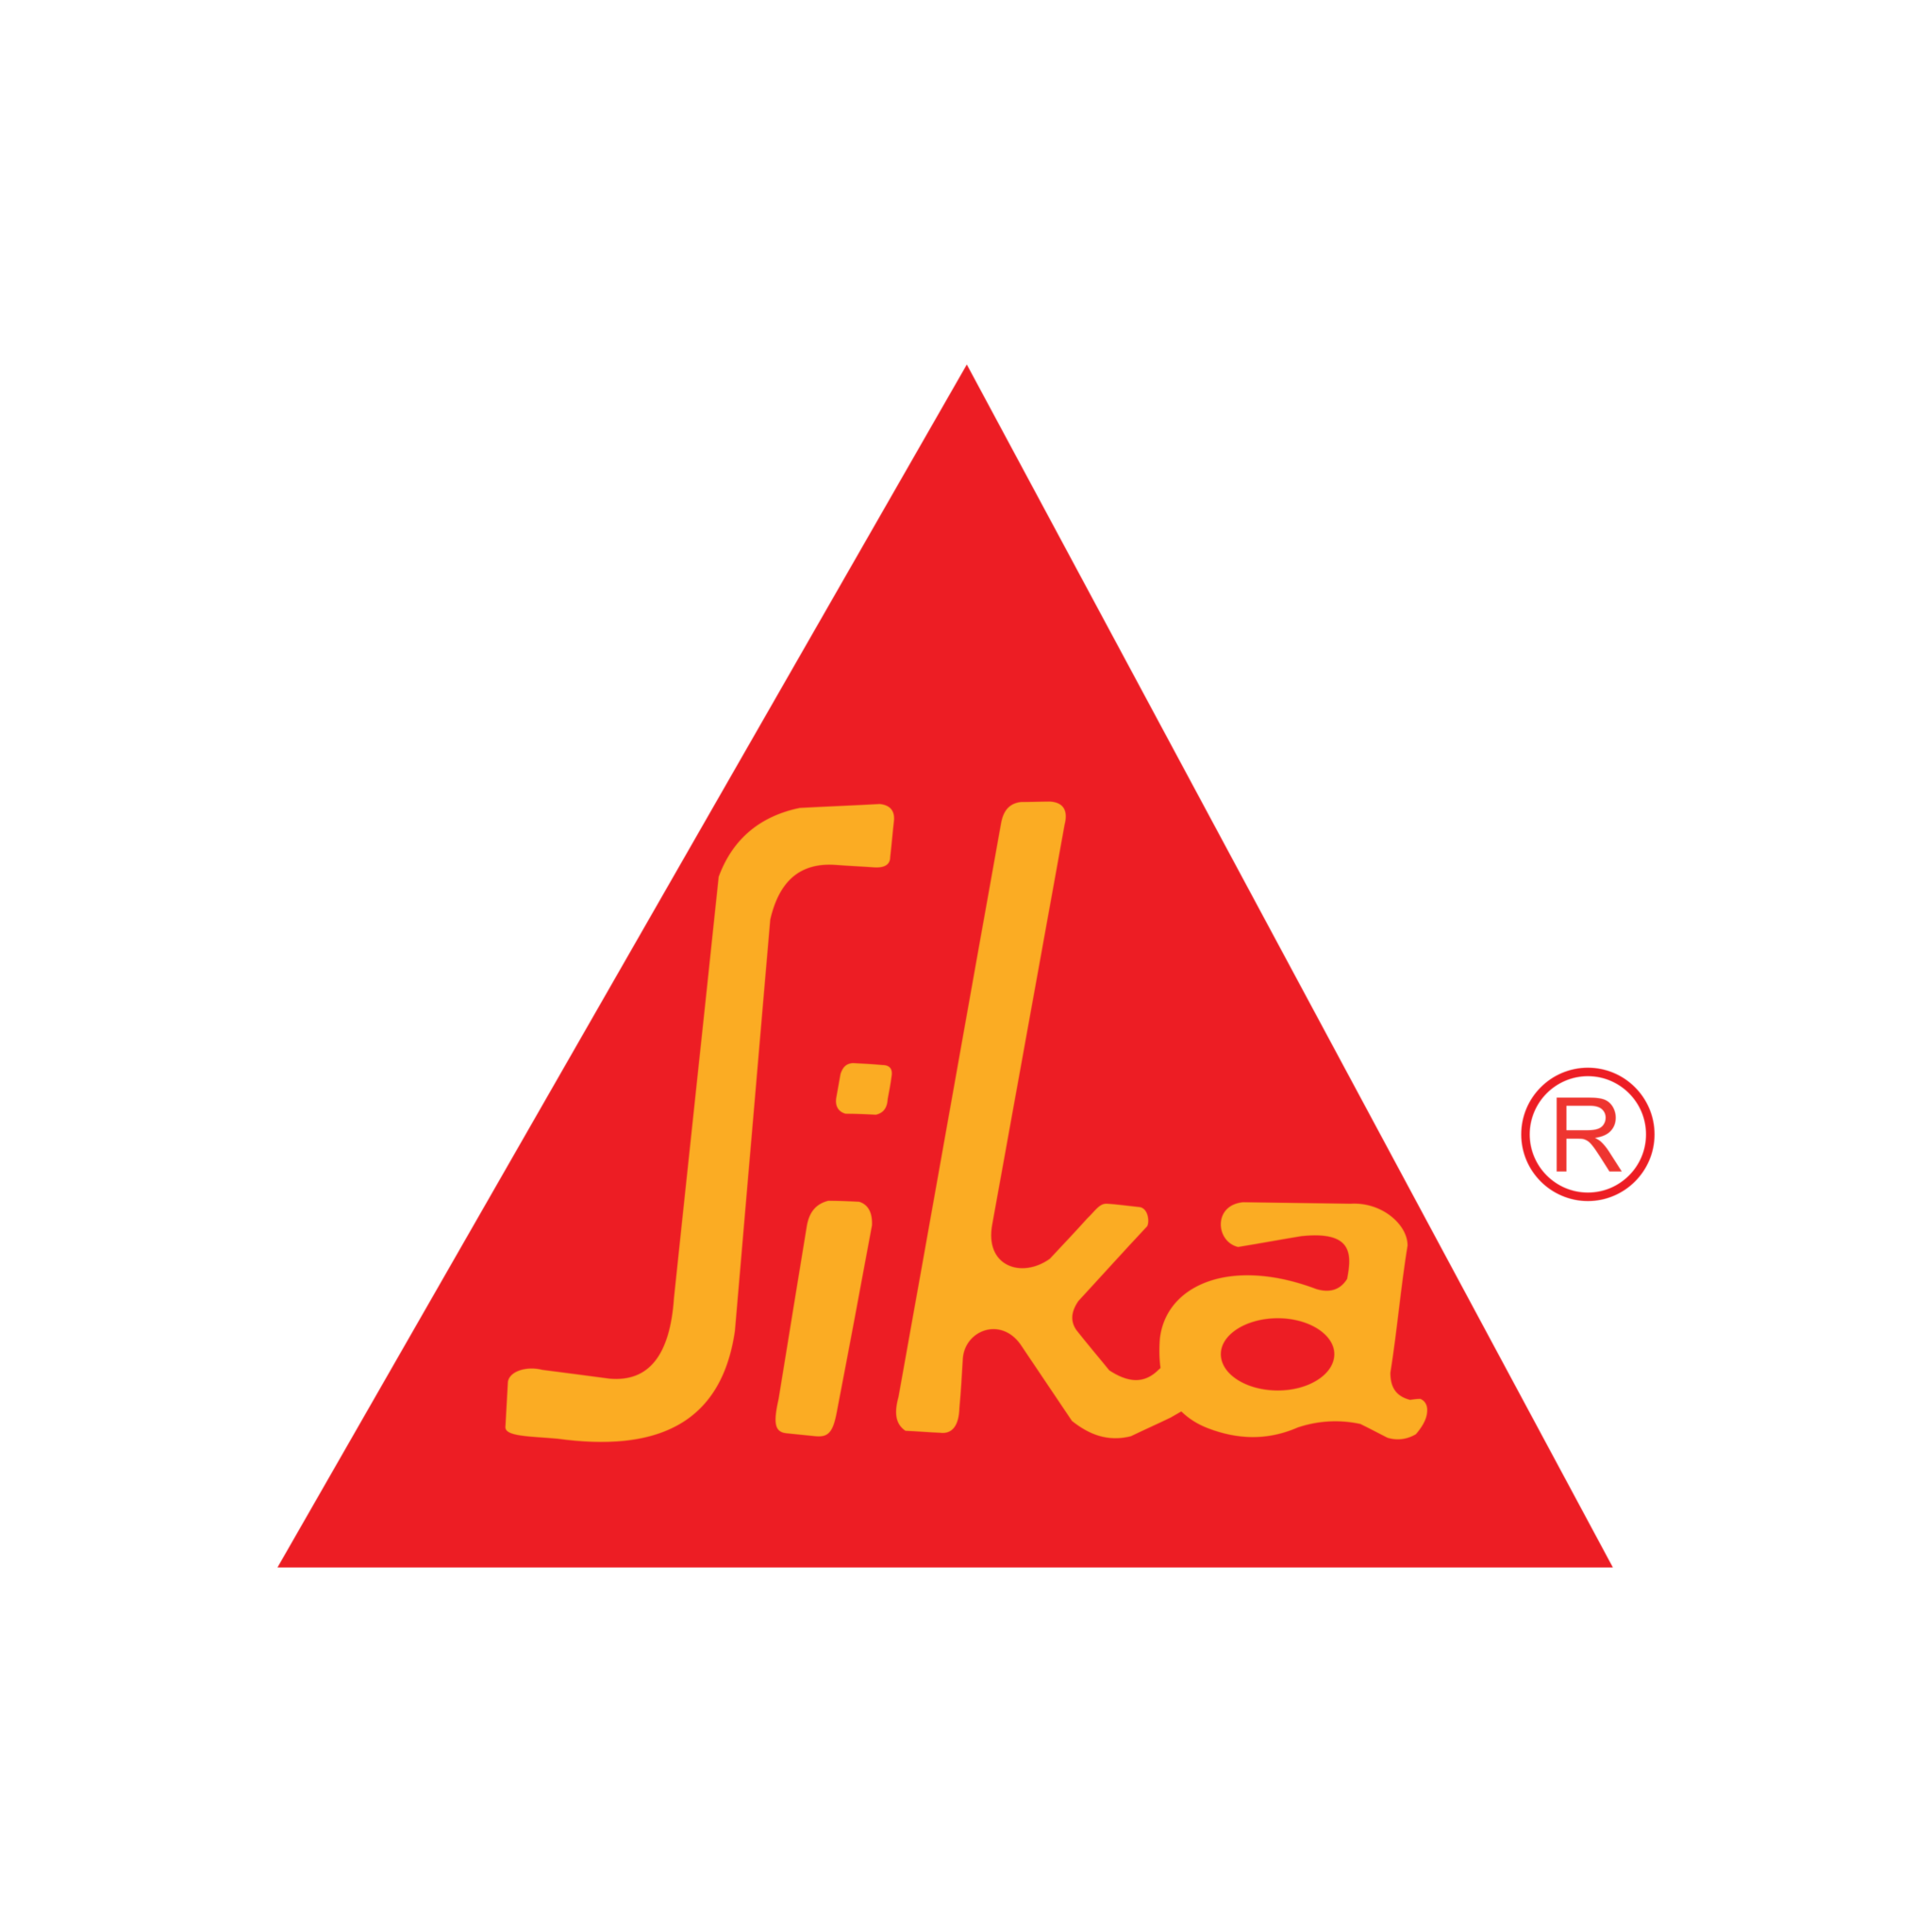 sika-logo-0-2048x2048